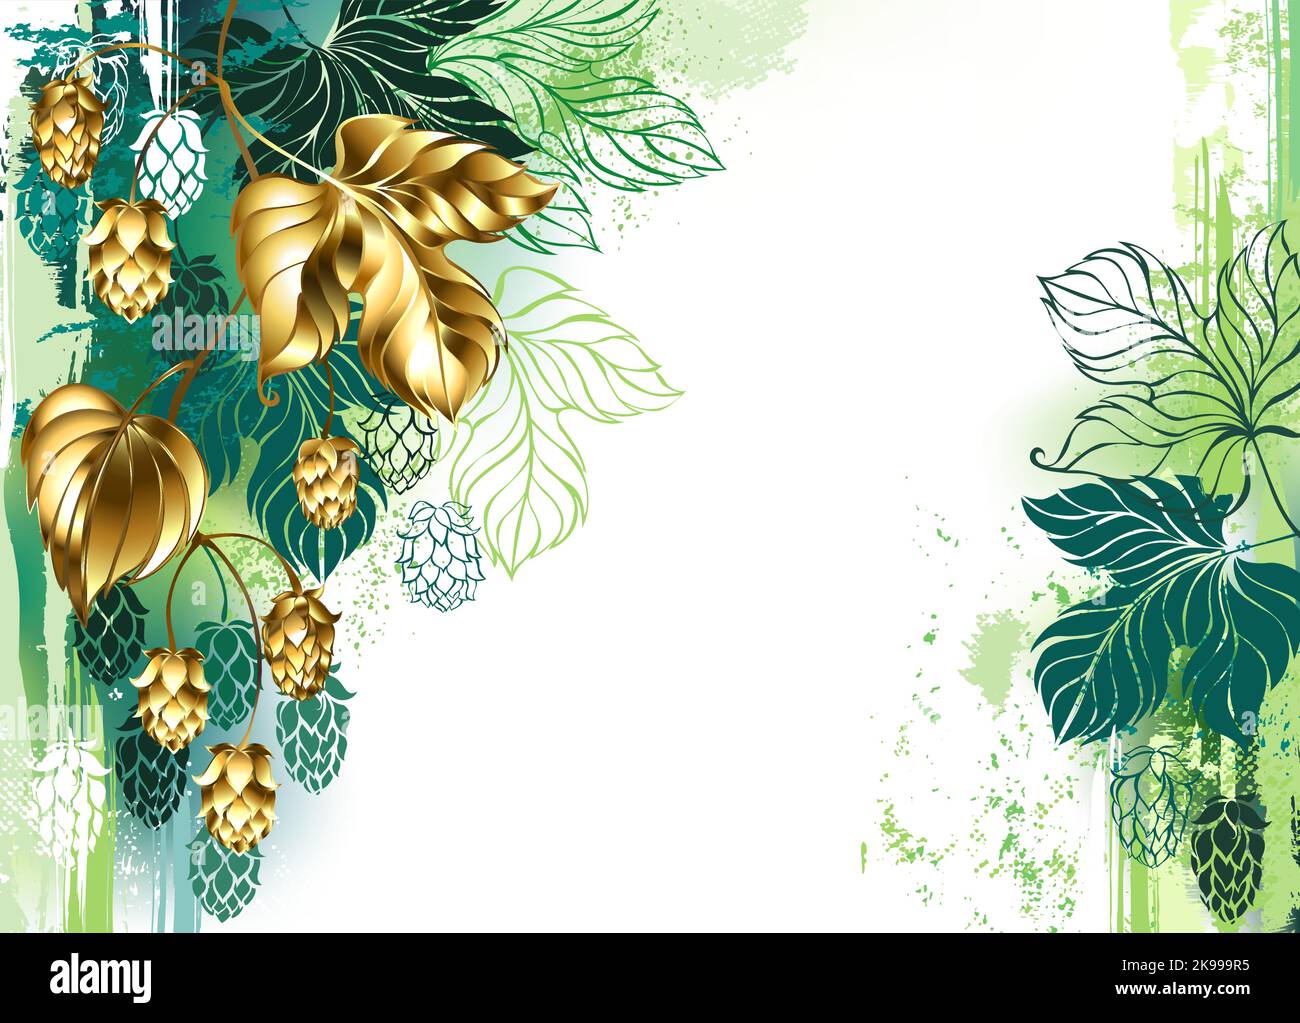 Dipinto con vernice verde, sfondo chiaro, decorato con ramo di luppolo dorato, lucido, gioielli con bellissimi coni dorati. Salto d'oro. Illustrazione Vettoriale